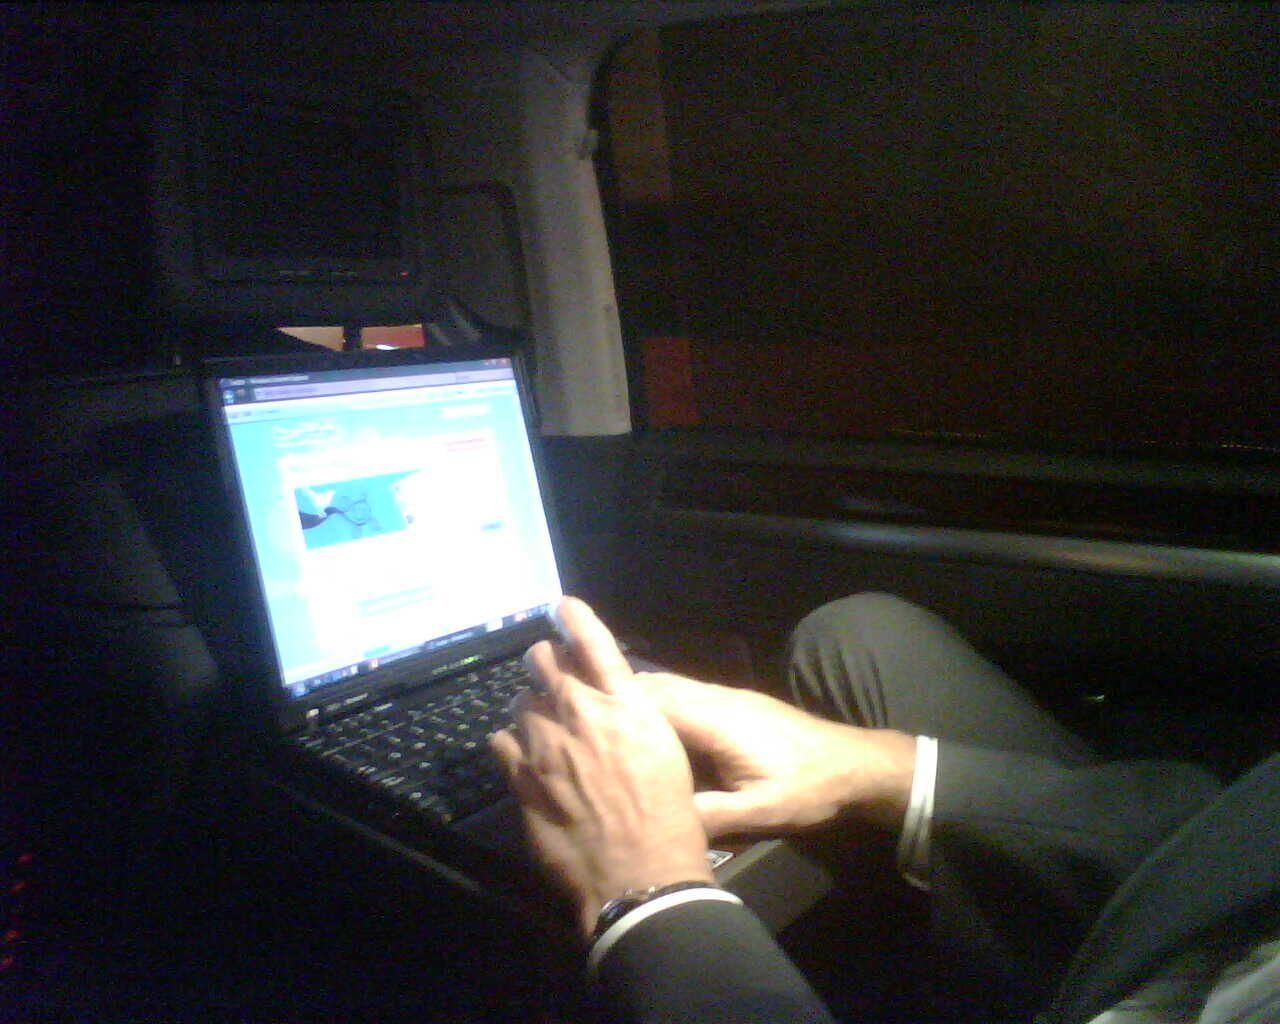 Twitxr: Amb el President Benach al cotxe, fent feina